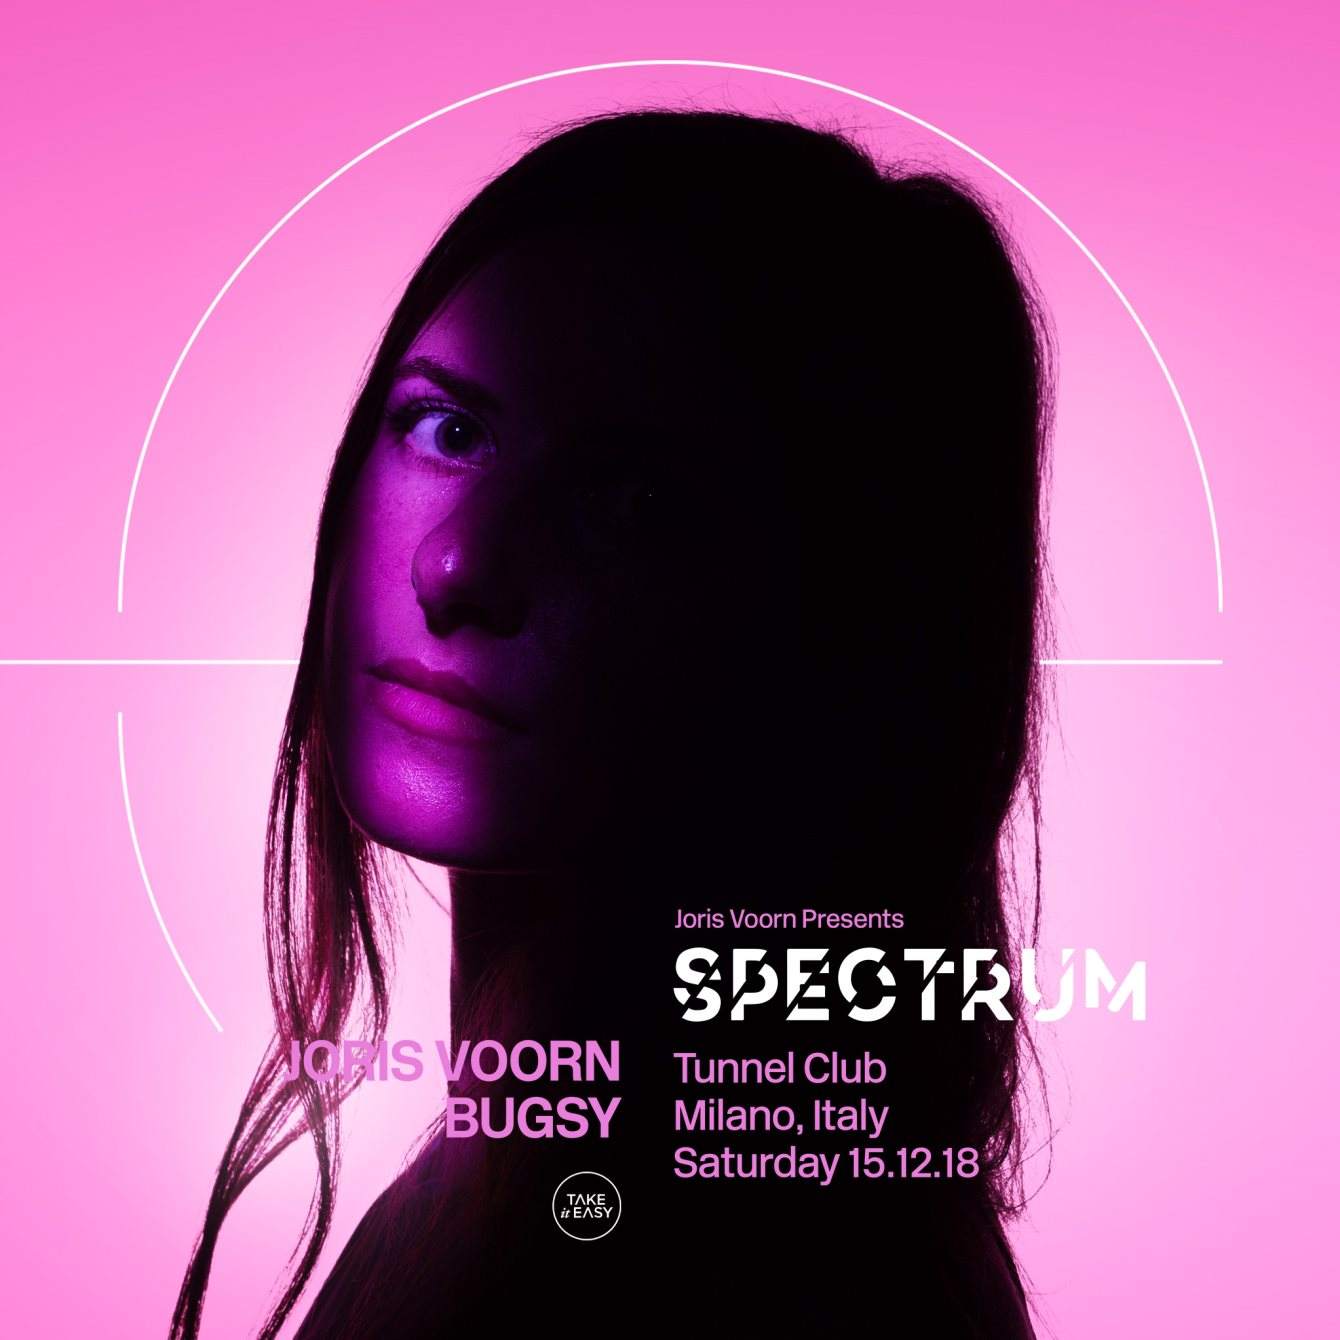 Joris Voorn presents Spectrum - Take it Easy - フライヤー表